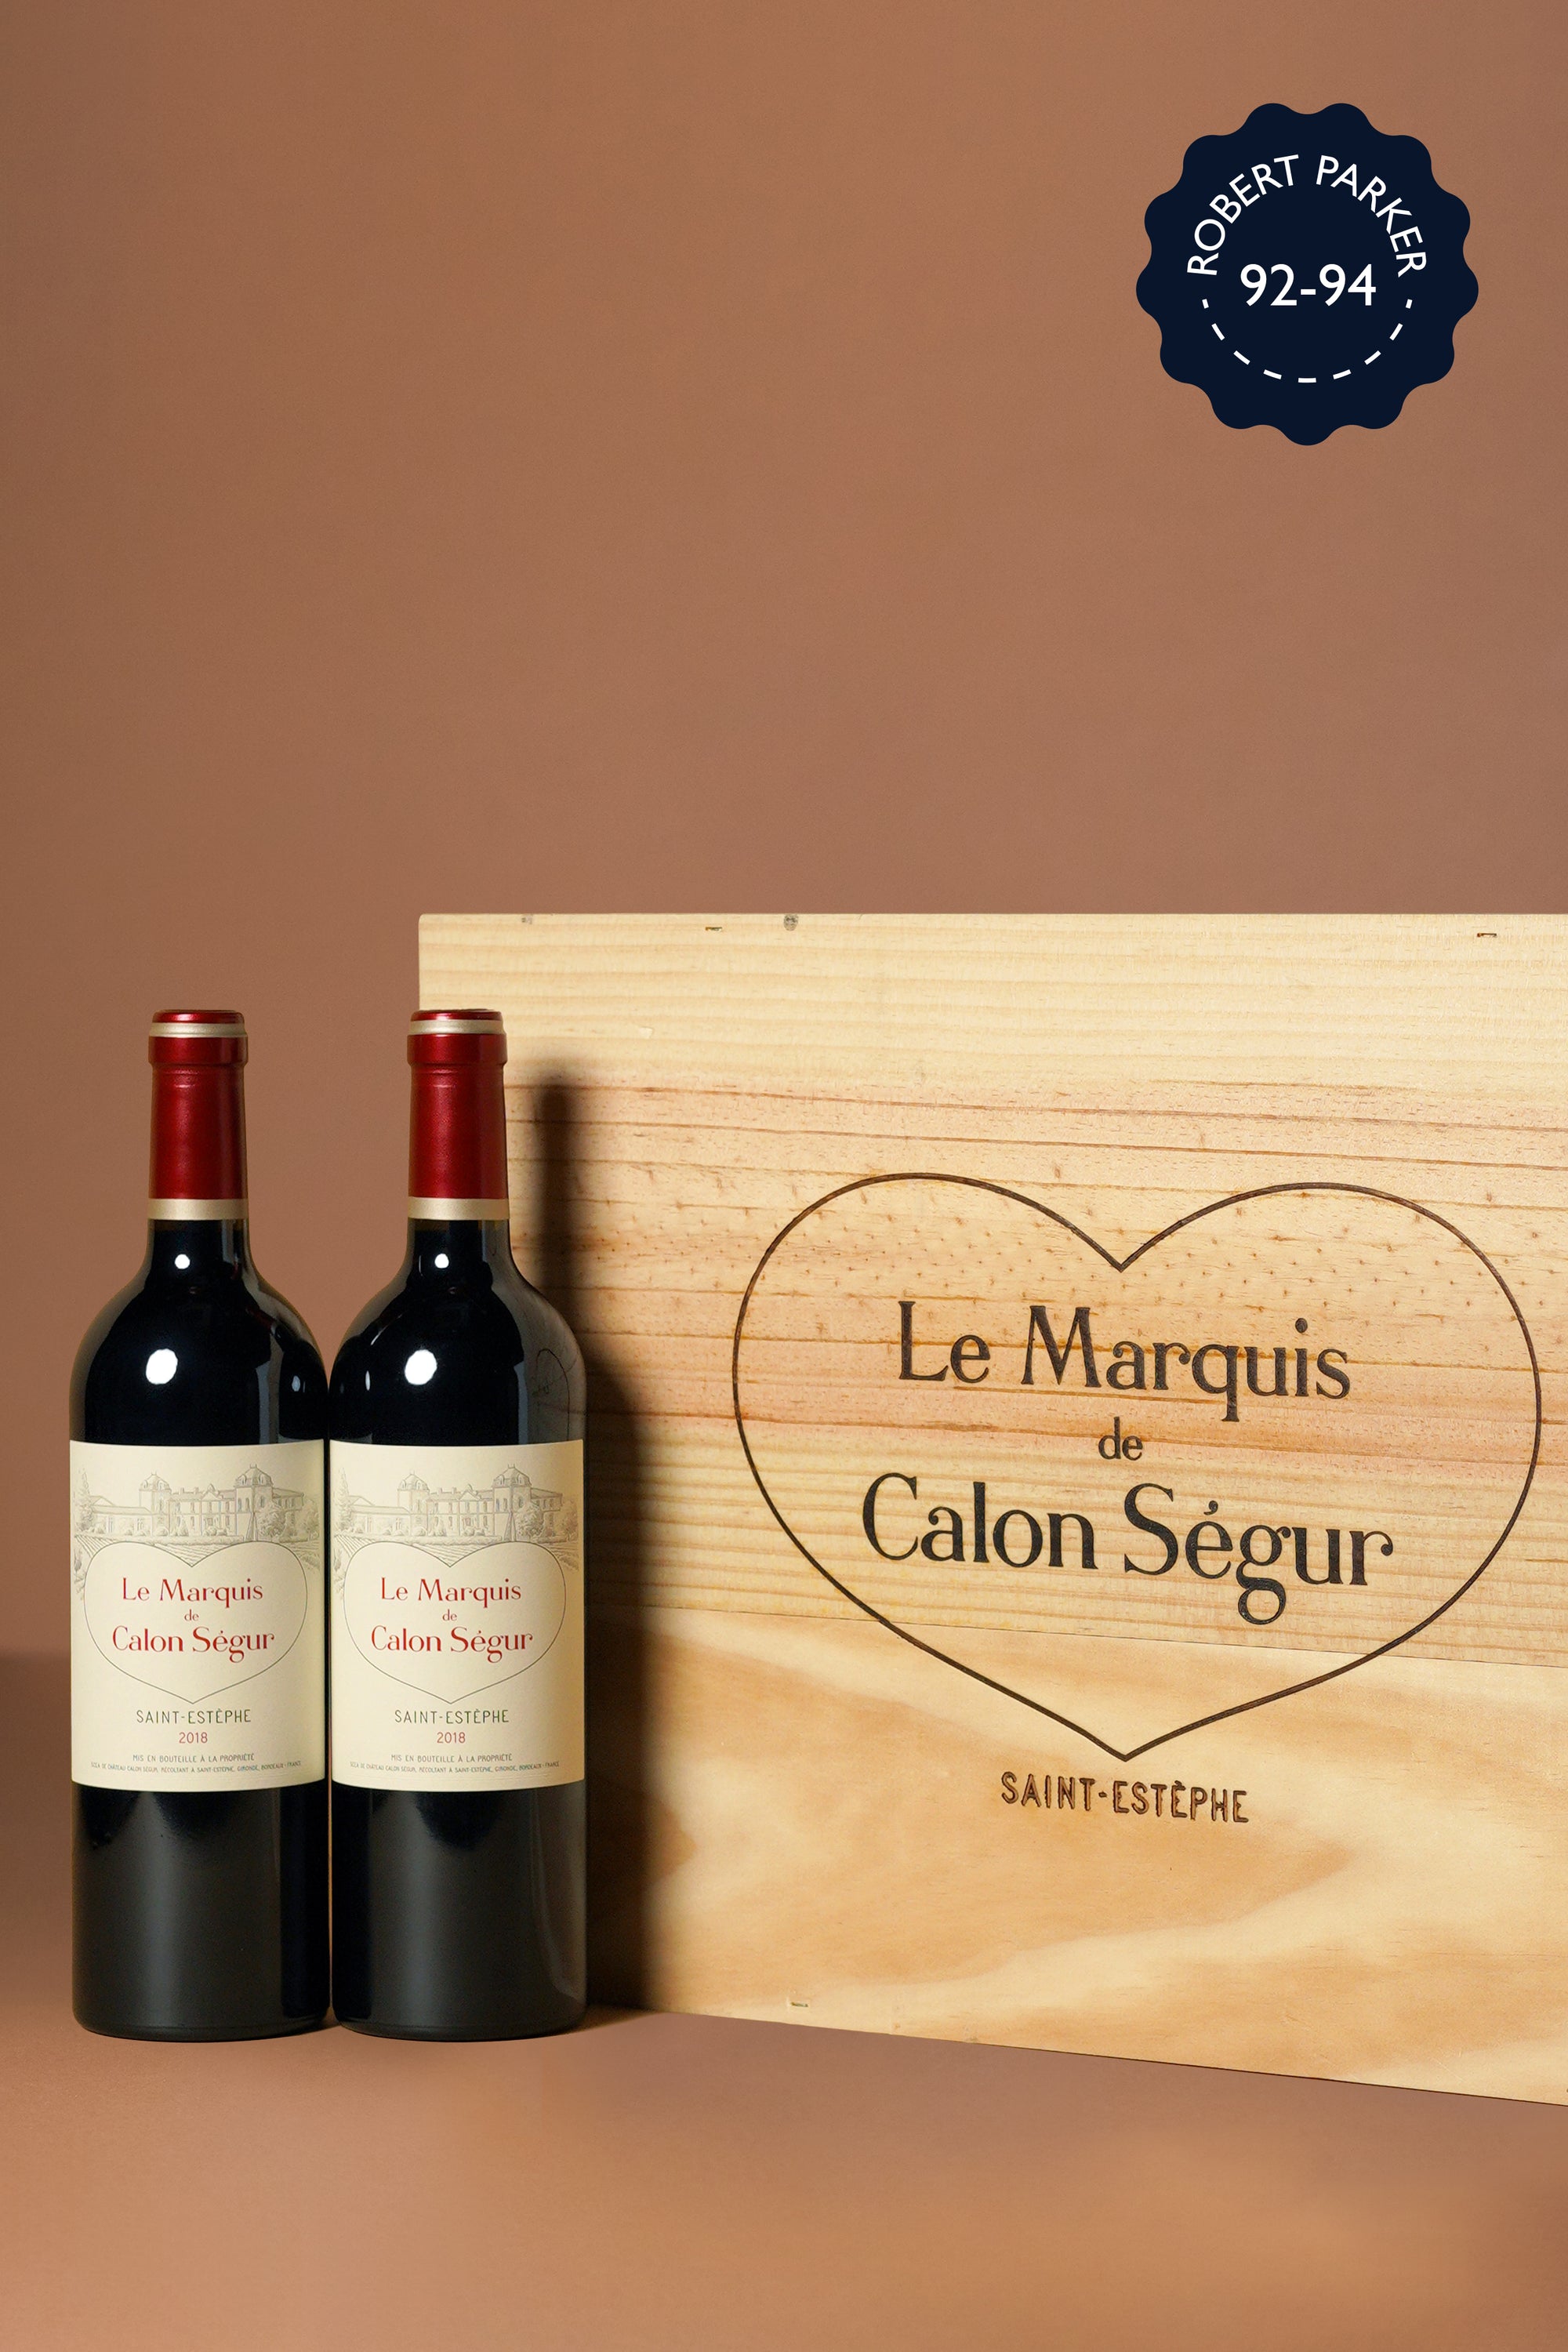 Calon Segur, Le Marquis de Calon Segur 2018 (OWC of 6 bottles)